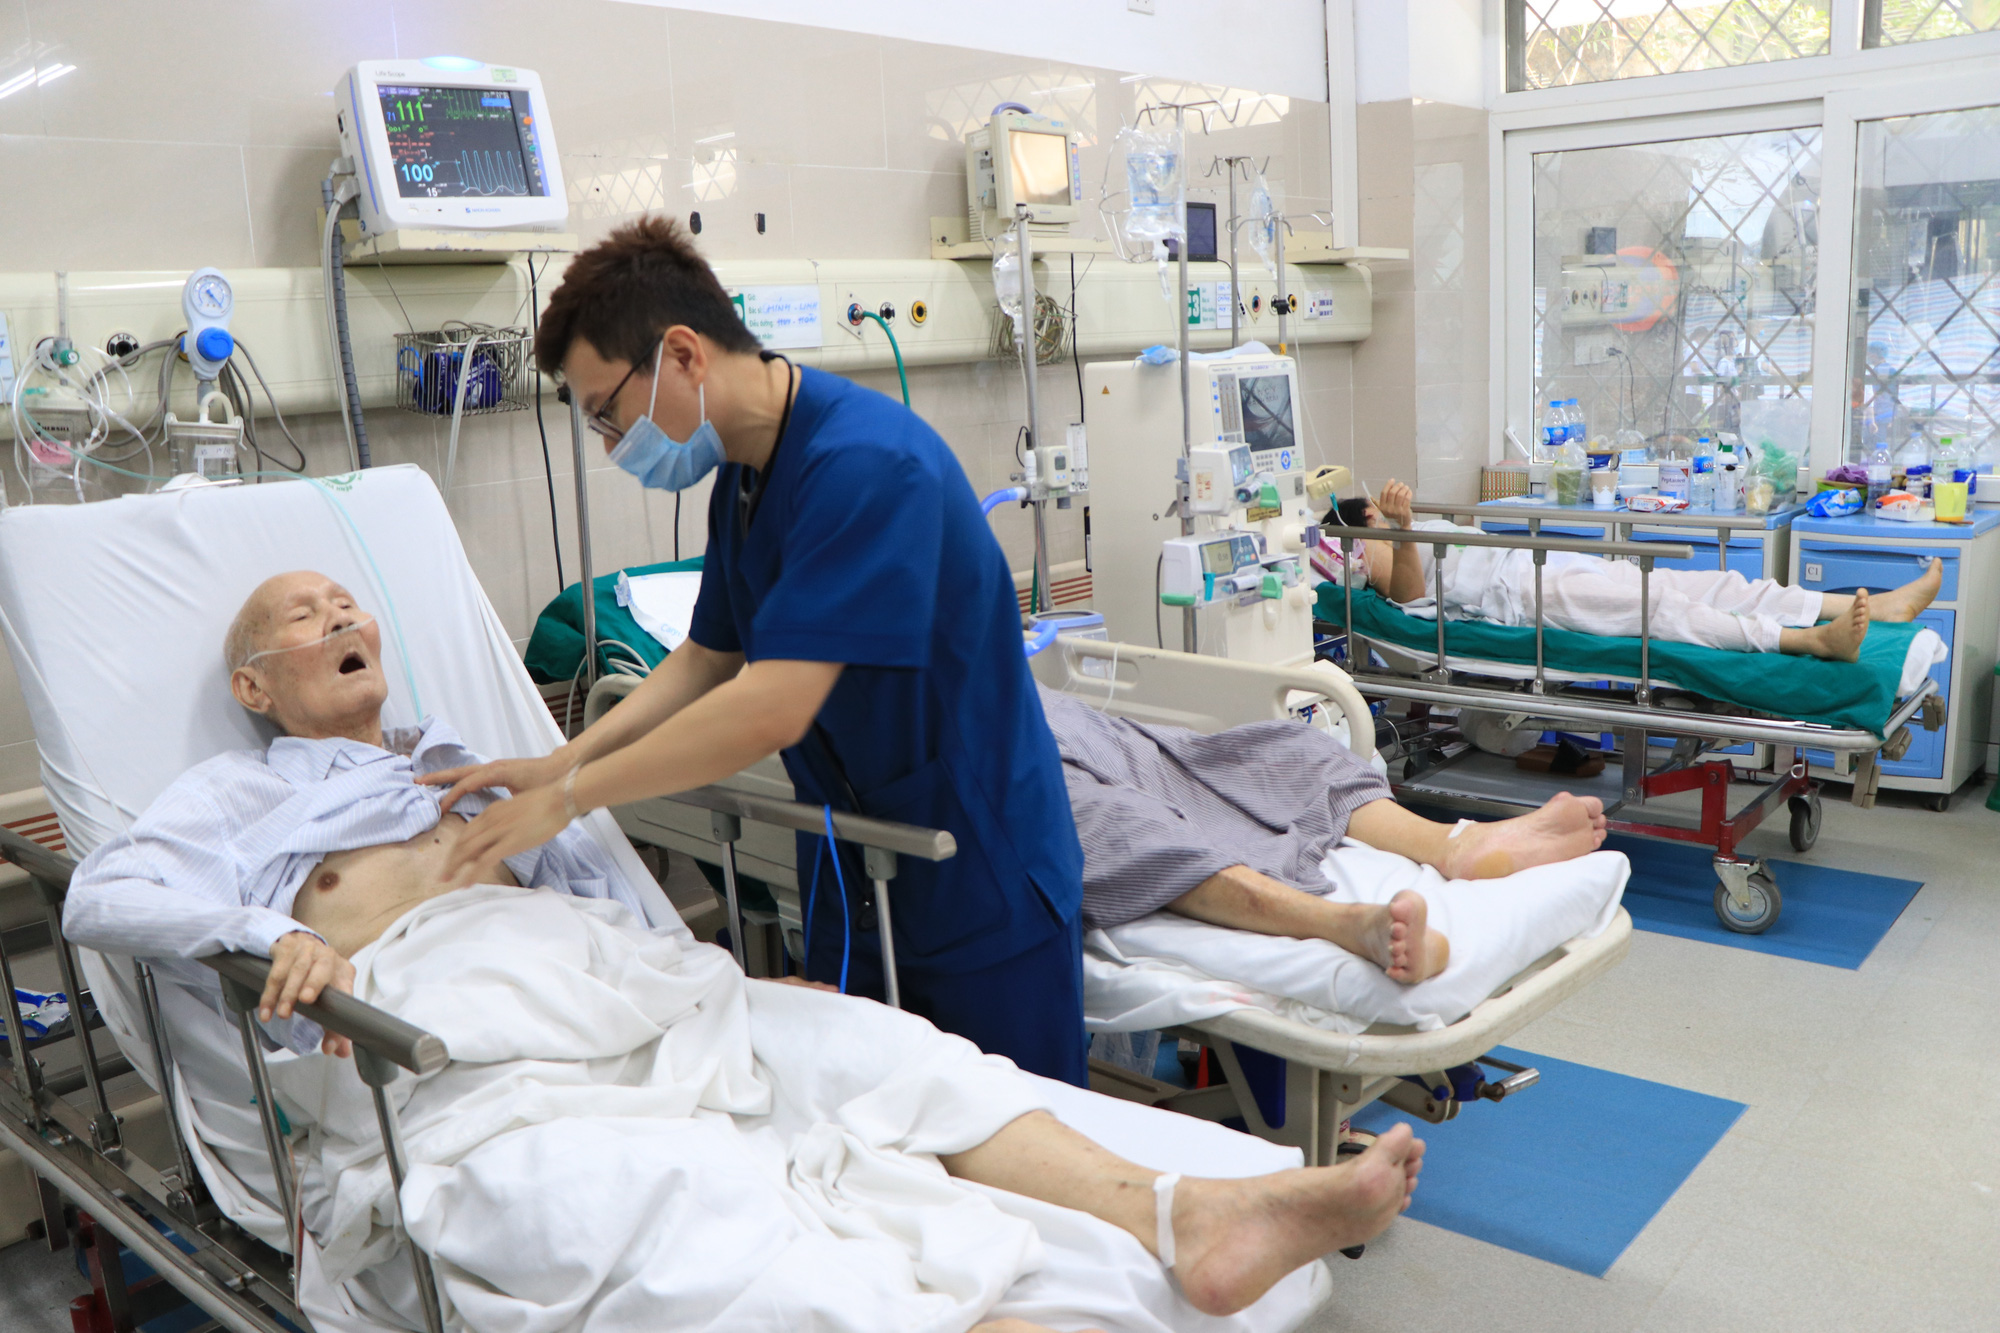 Hơn 200 nhân viên bệnh viện Bạch Mai xin nghỉ việc: Lý do thu nhập thấp là không thực sự thuyết phục - Ảnh 2.